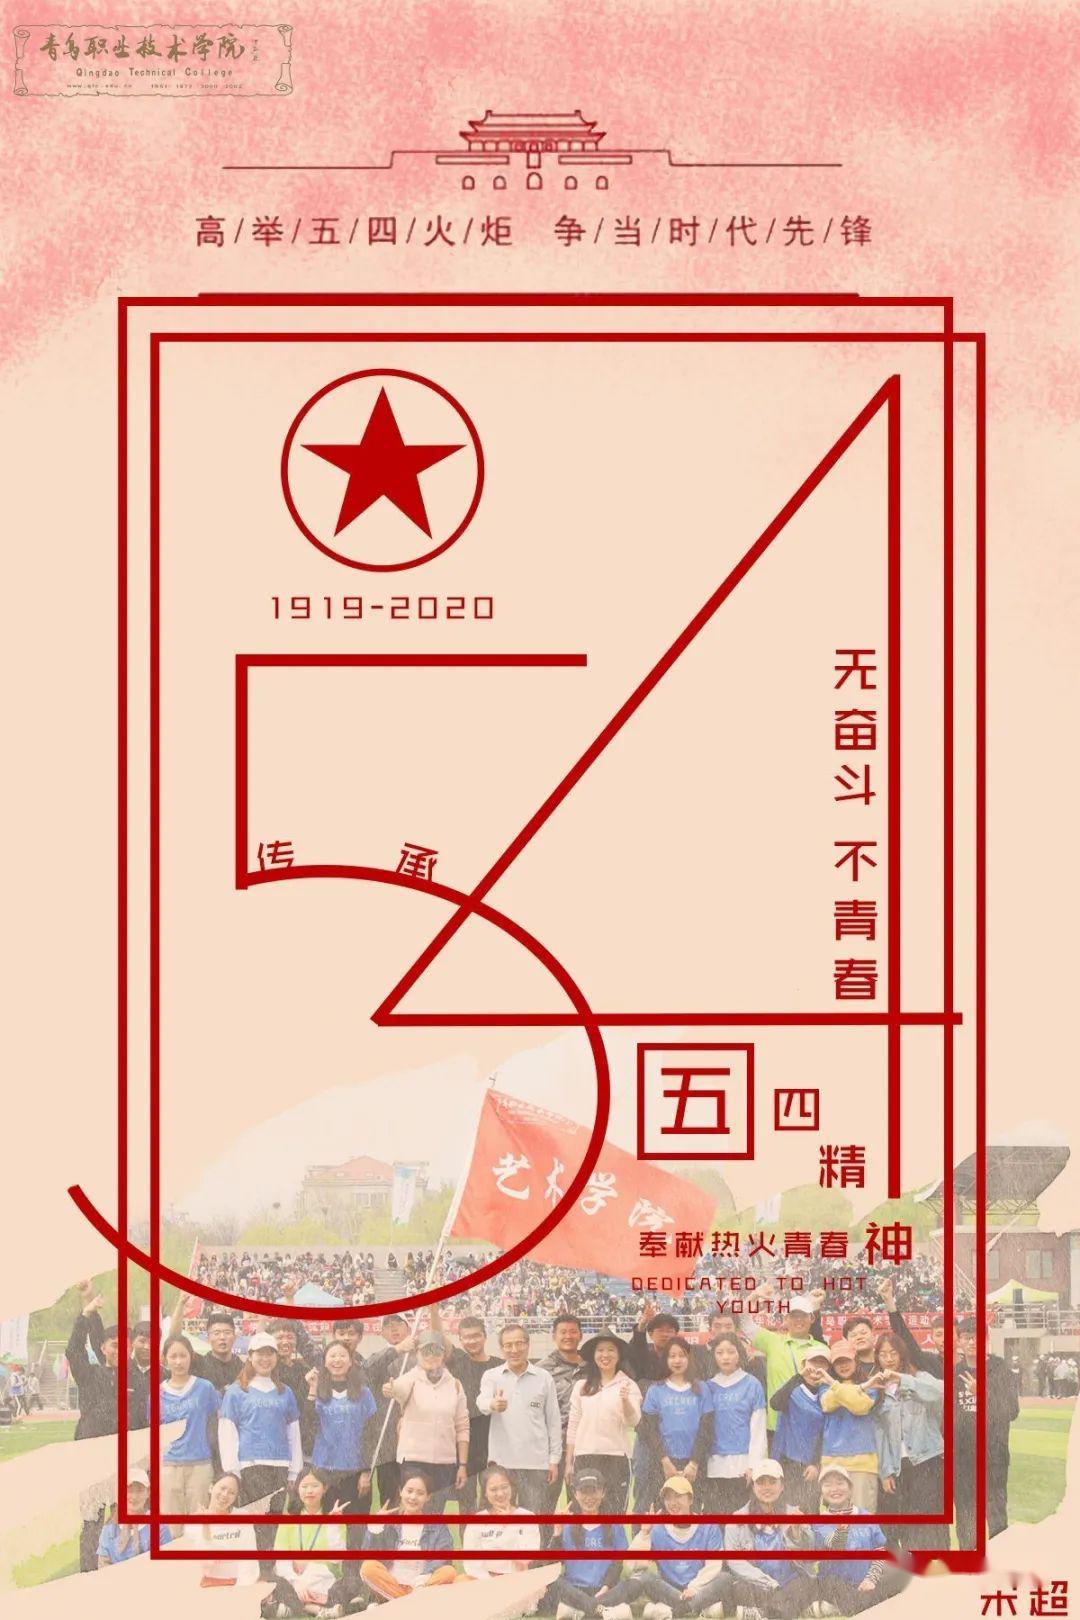 活动伊始,艺馨书院组织报名参加海报设计的学生回顾与纪念五四运动